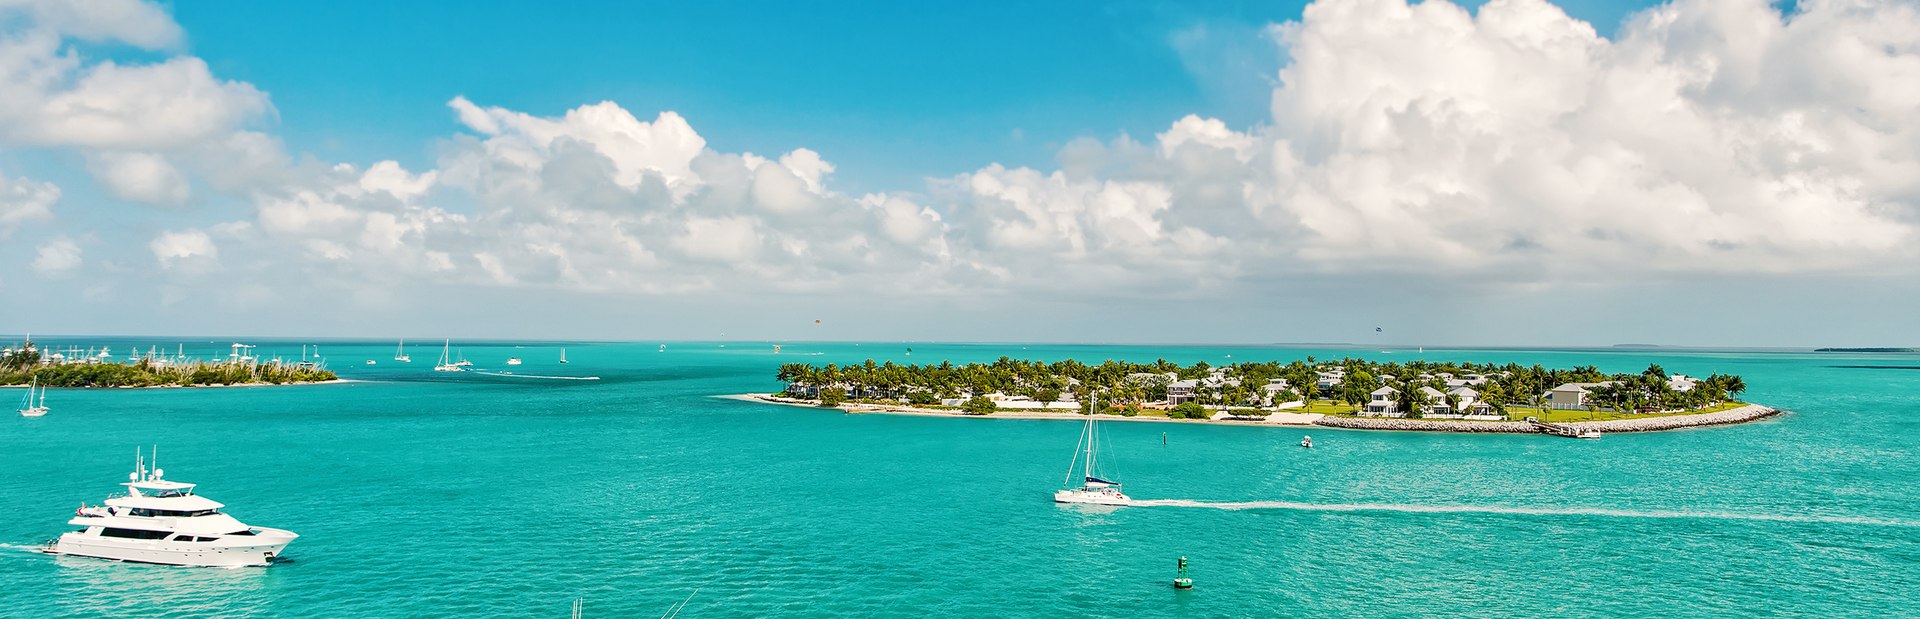 gulf coast luxury yacht charters